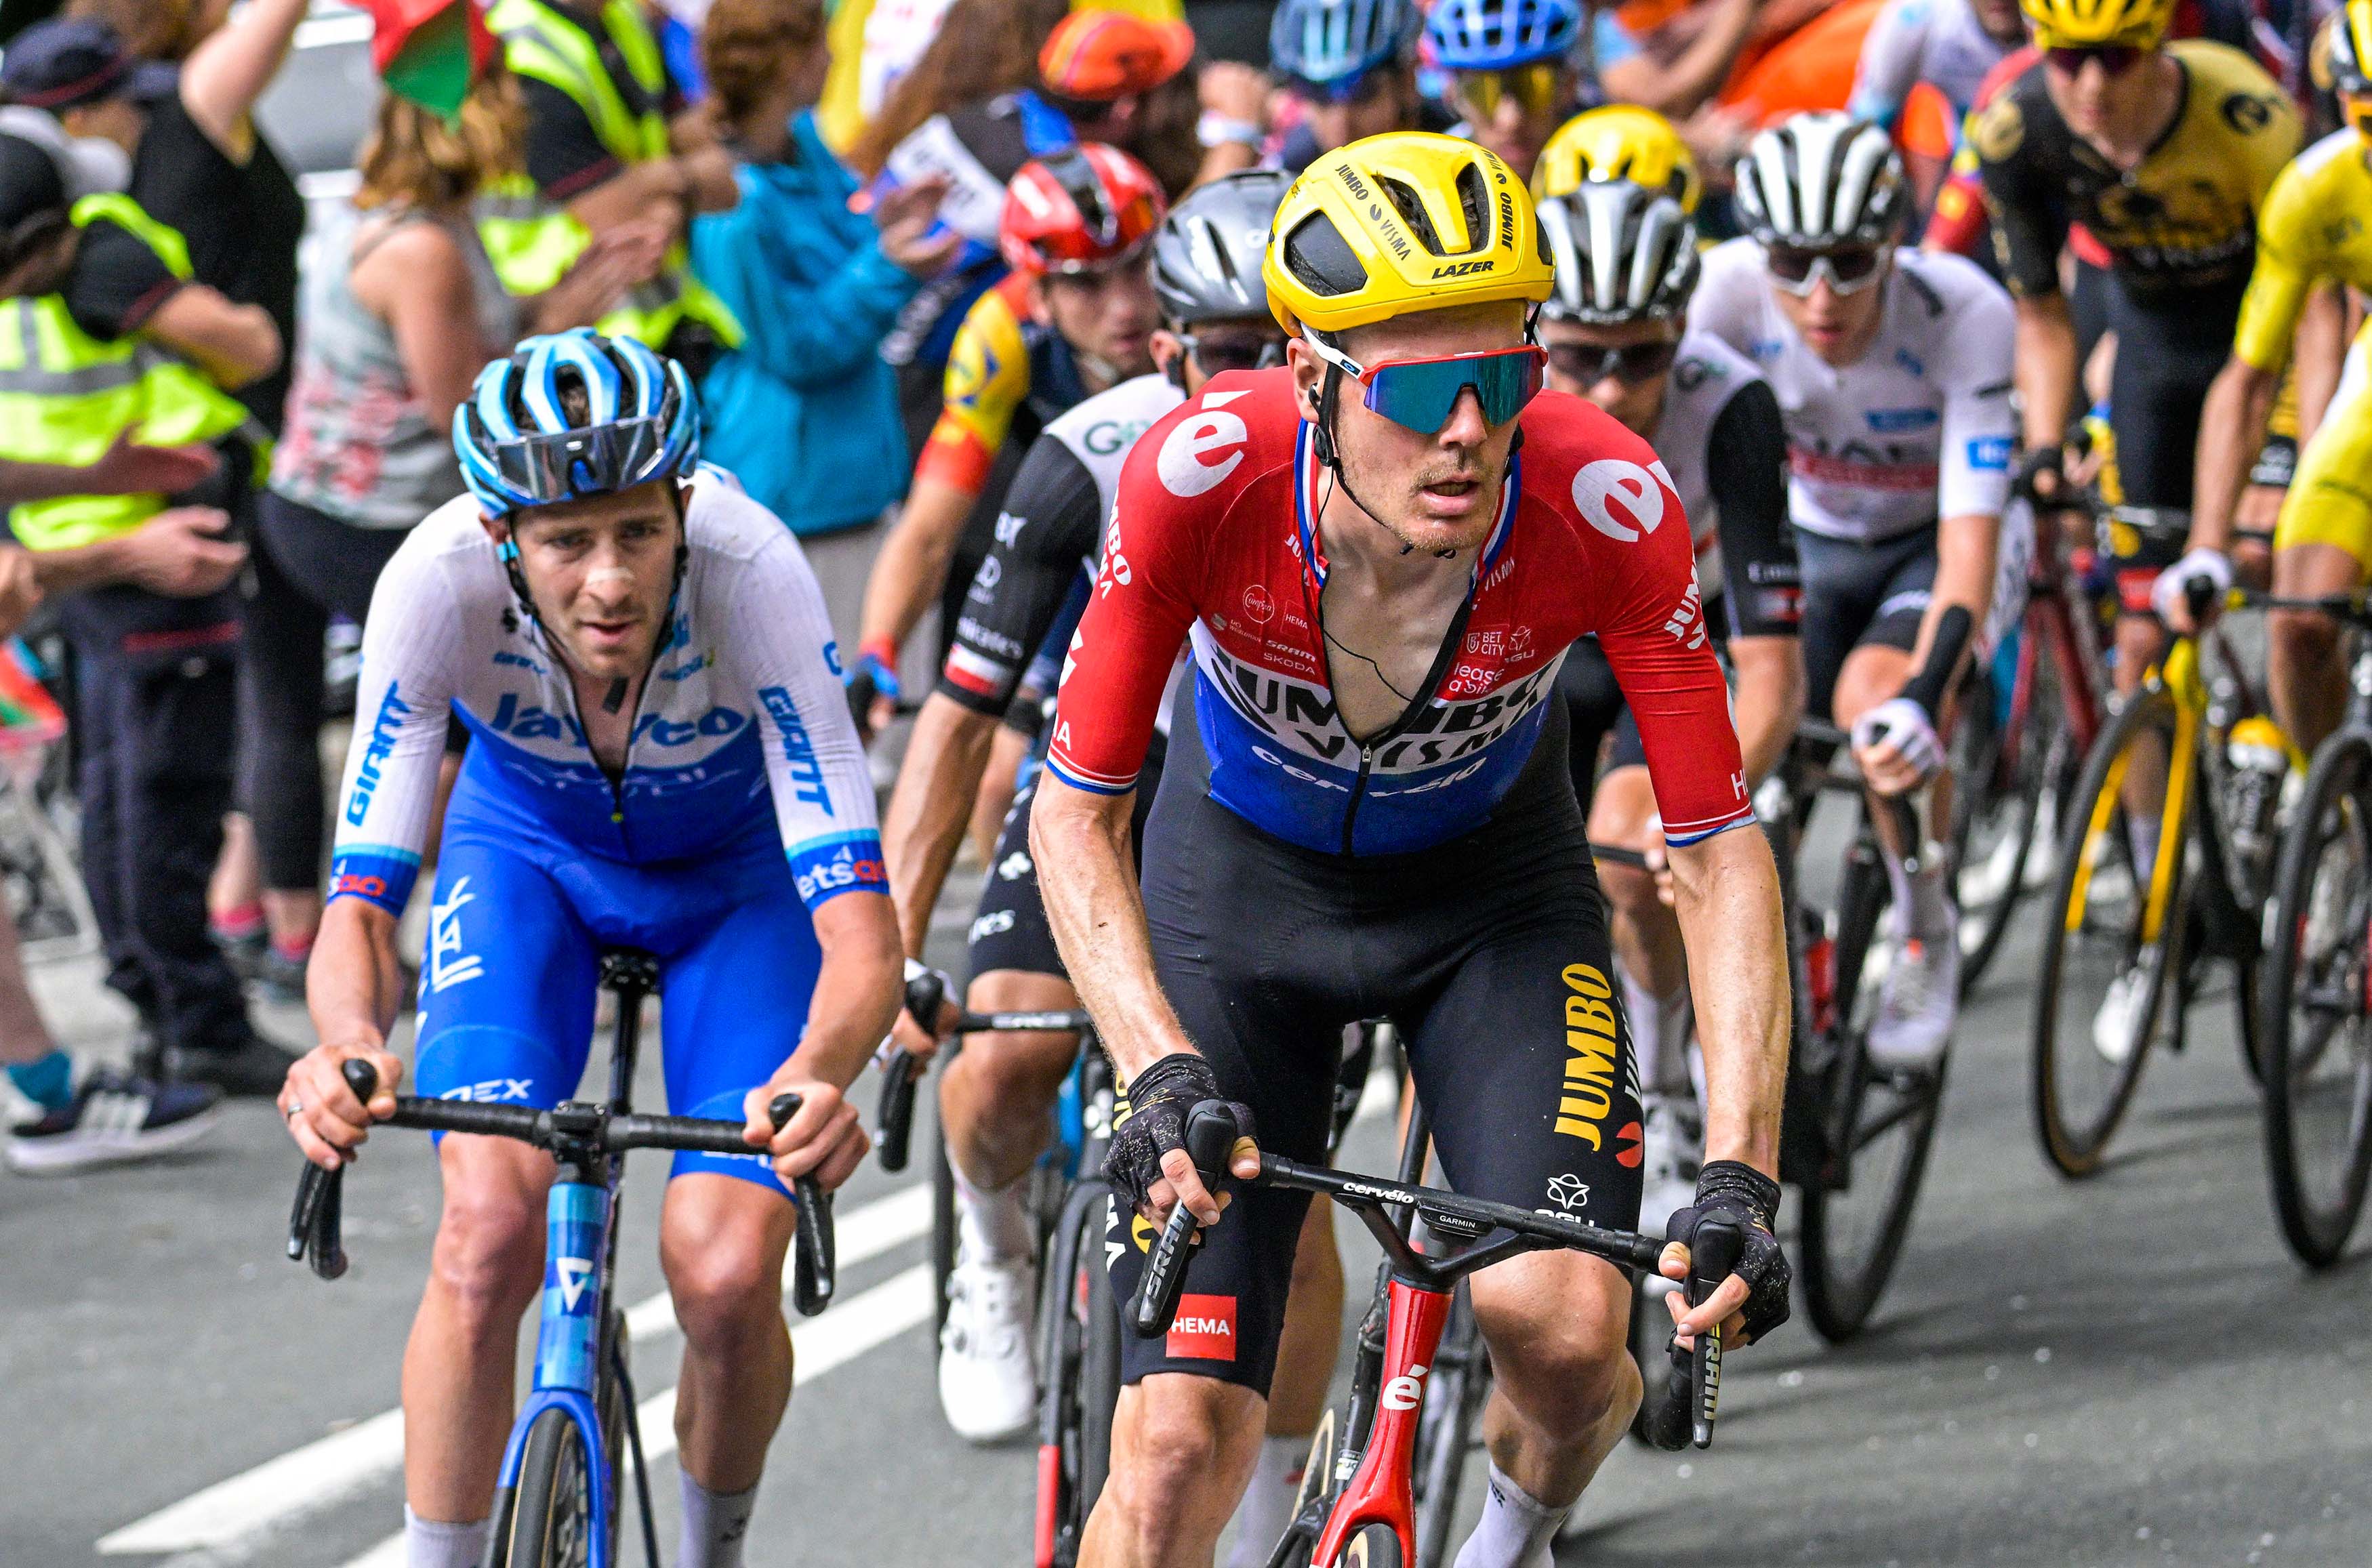 Nederlands Kampioen Dylan van Baarle in Tour de France